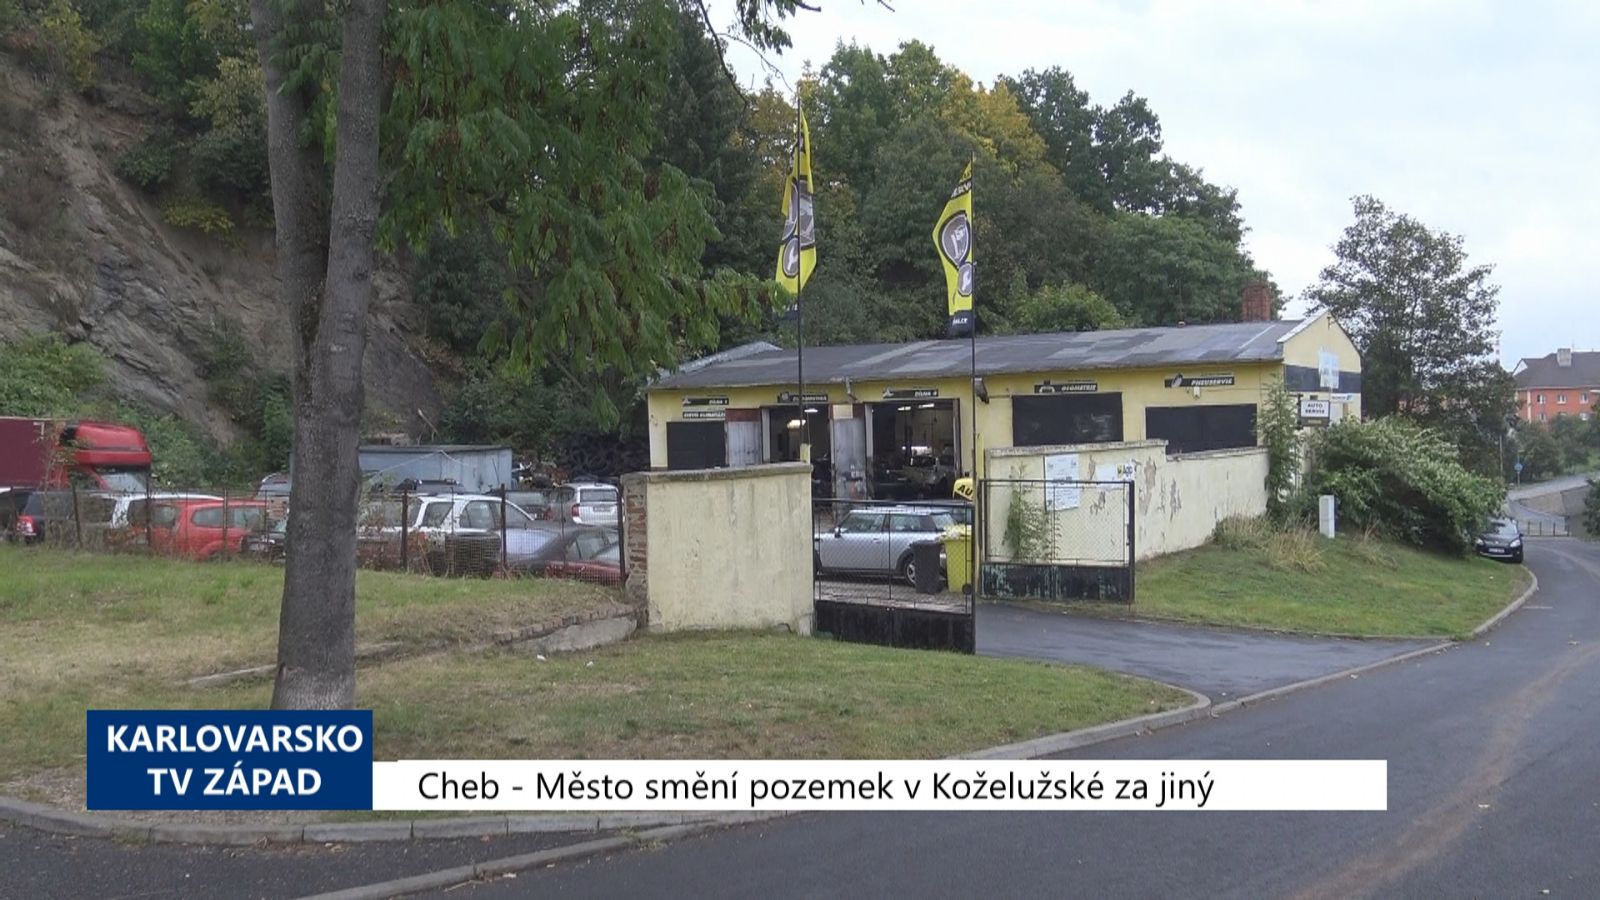 Cheb: Město smění pozemek v Koželužské za jiný (TV Západ)